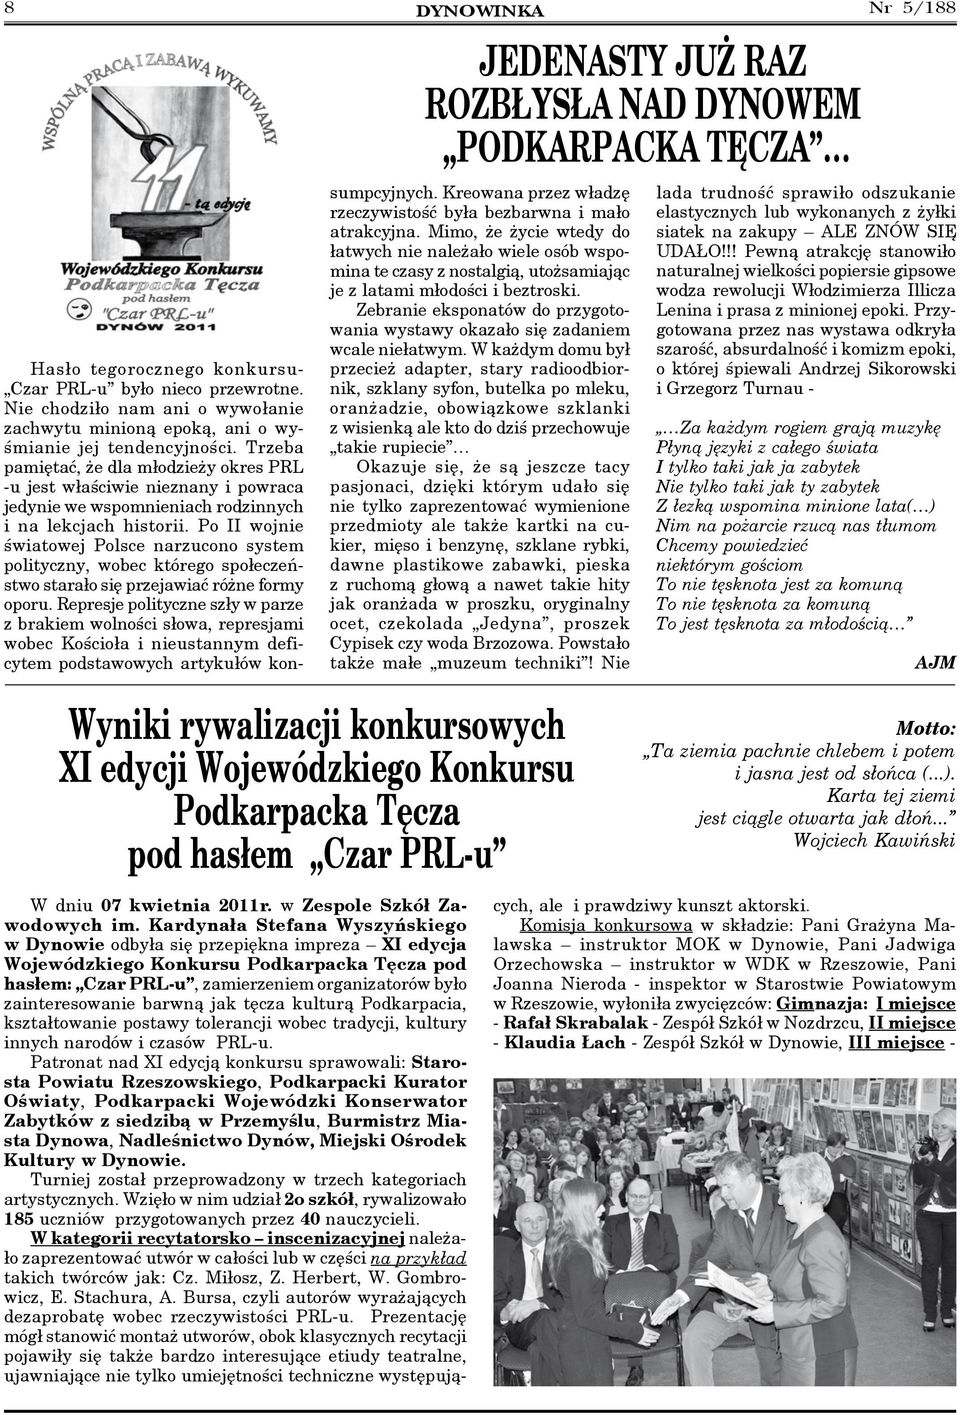 Po II wojnie światowej Polsce narzucono system polityczny, wobec którego społeczeństwo starało się przejawiać różne formy oporu.